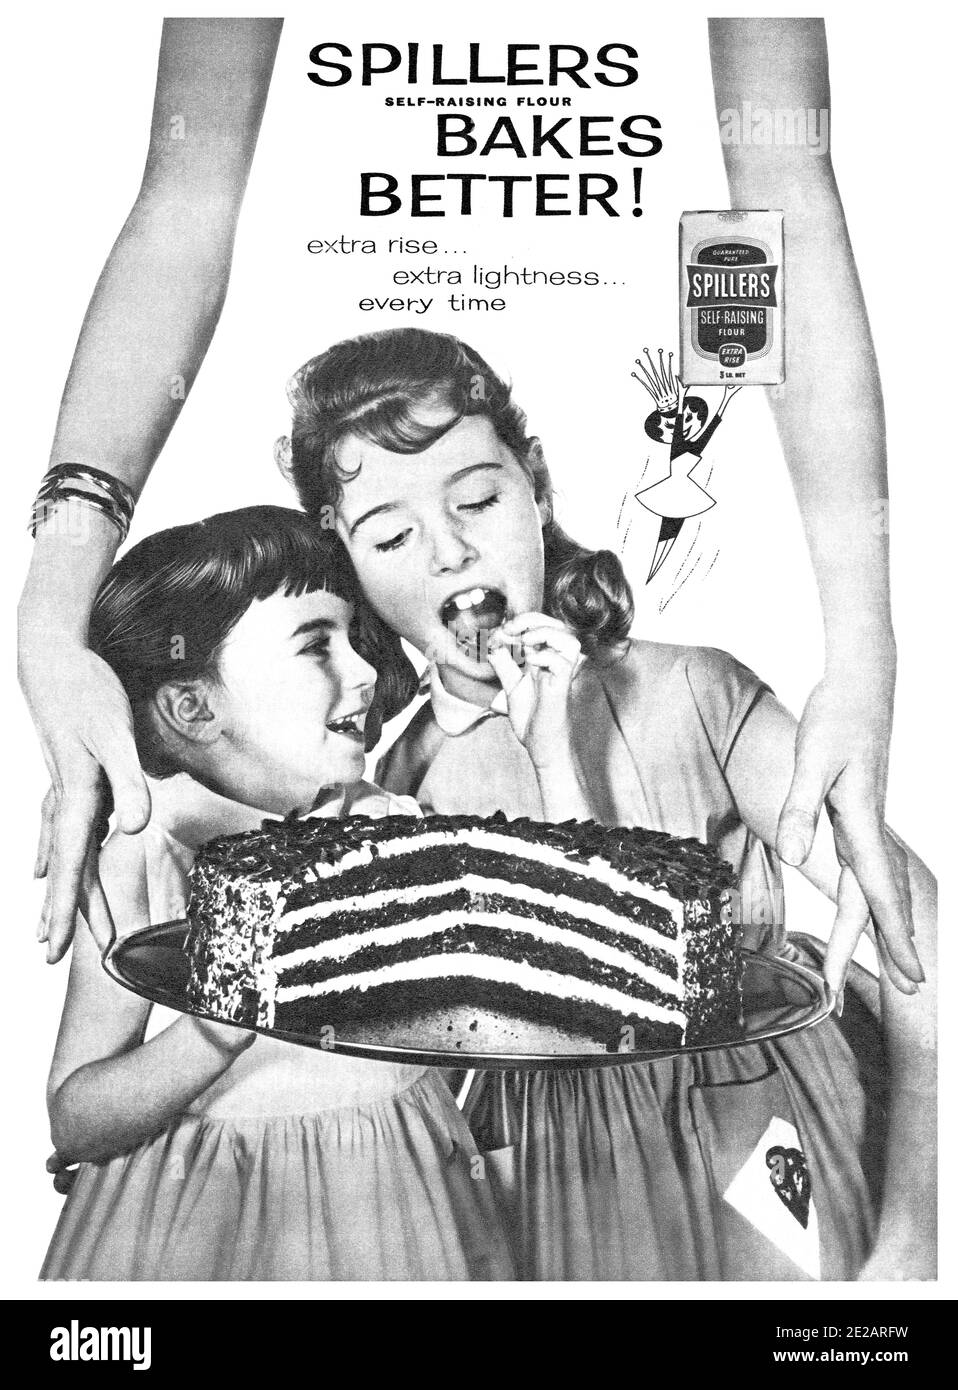 1960 publicité britannique pour la farine auto-élevant de Spillers. Banque D'Images